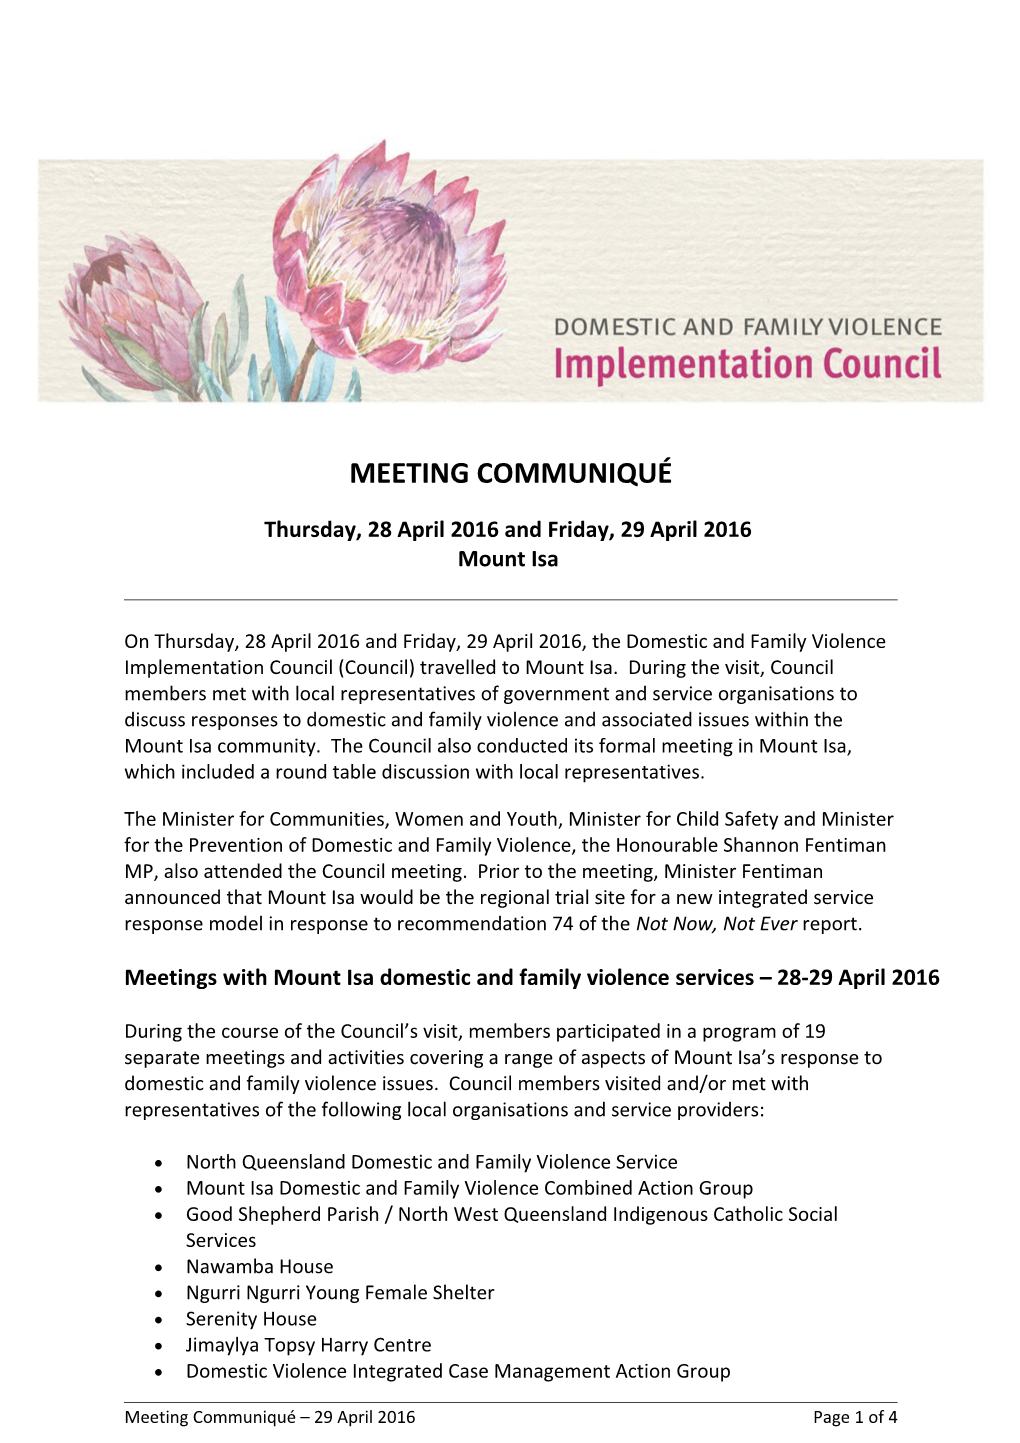 DFV Implementation Council Communique - April 2016